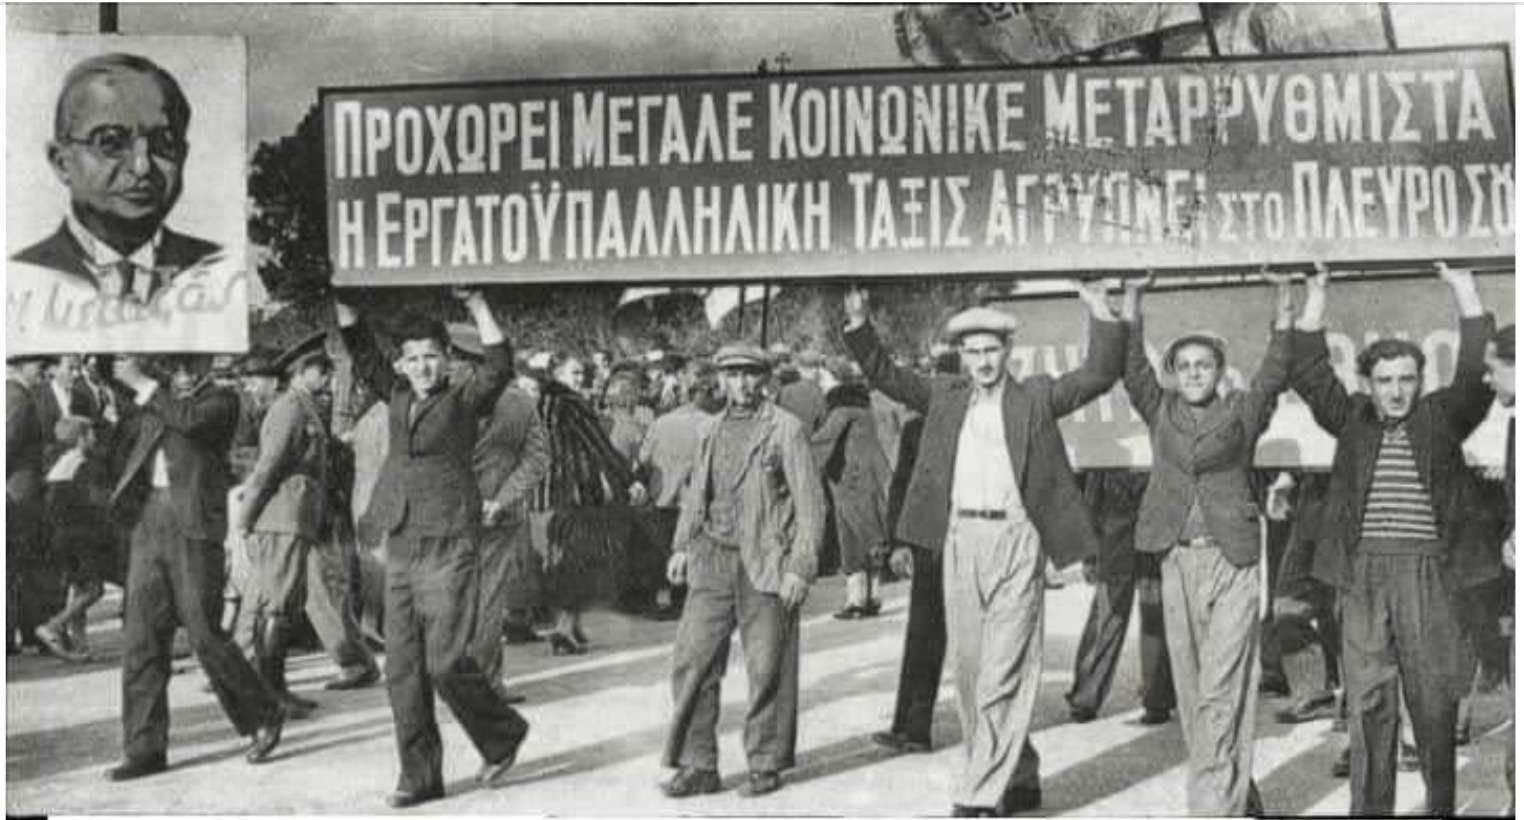 Πρωτομαγιά, λοιπόν σήμερα που ως «Εθνική Εργατική Εορτή» καθιερώθηκε για πρώτη φορά στην Ελλάδα από τον Ιωάννη Μεταξά.